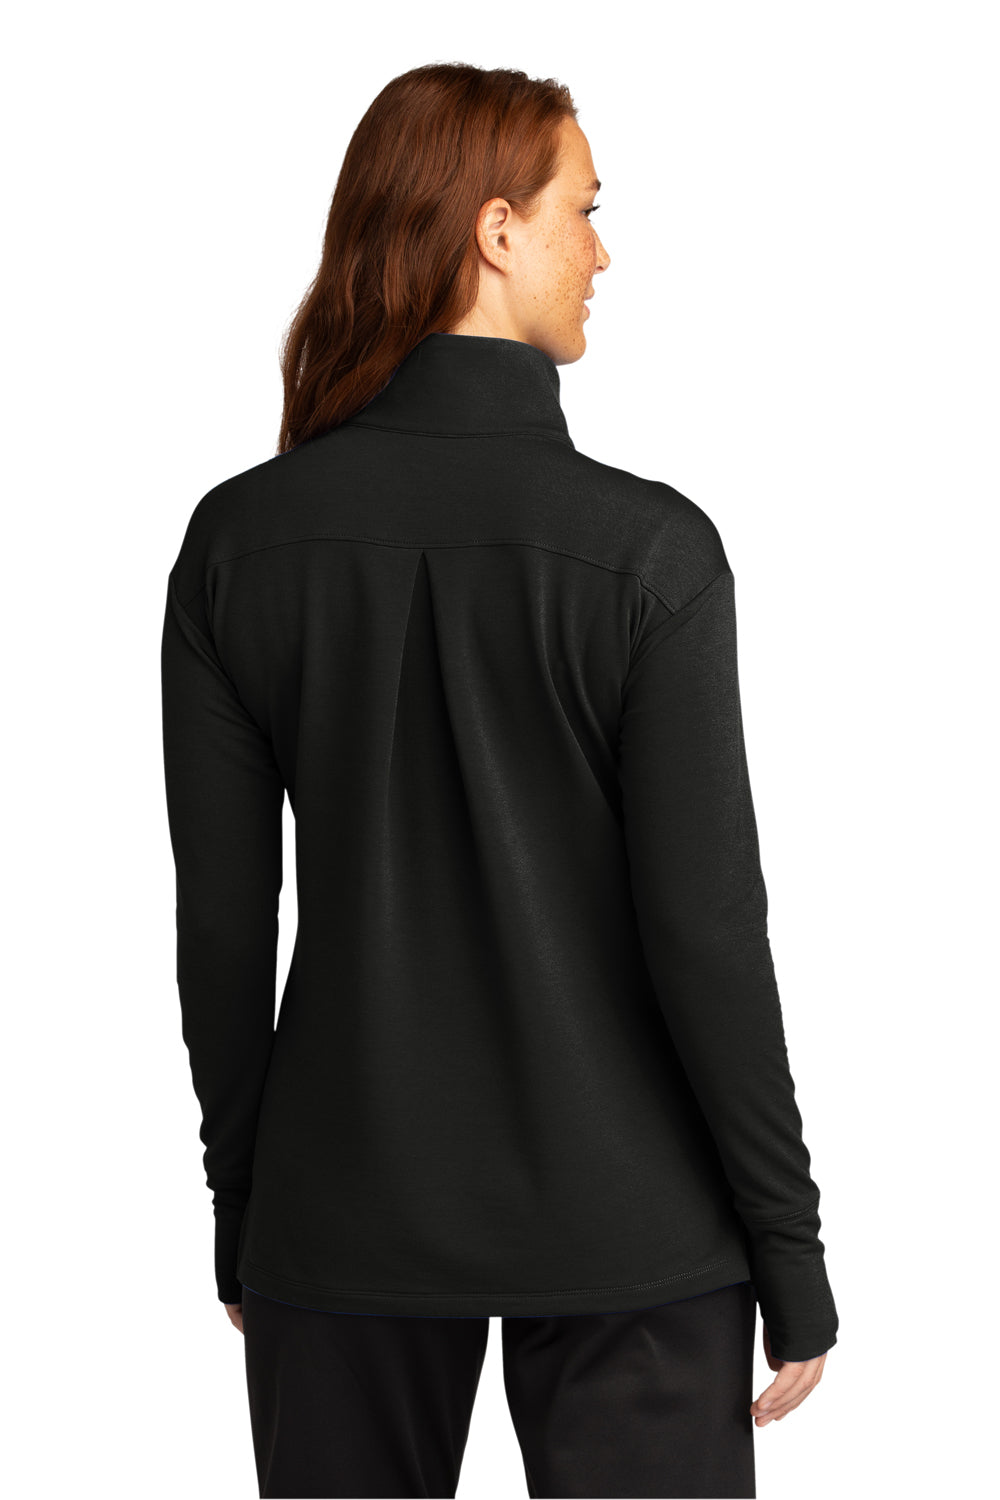 Sport-Tek Womens Flex Fleece 1/4 Zip Sweatshirt Black Side